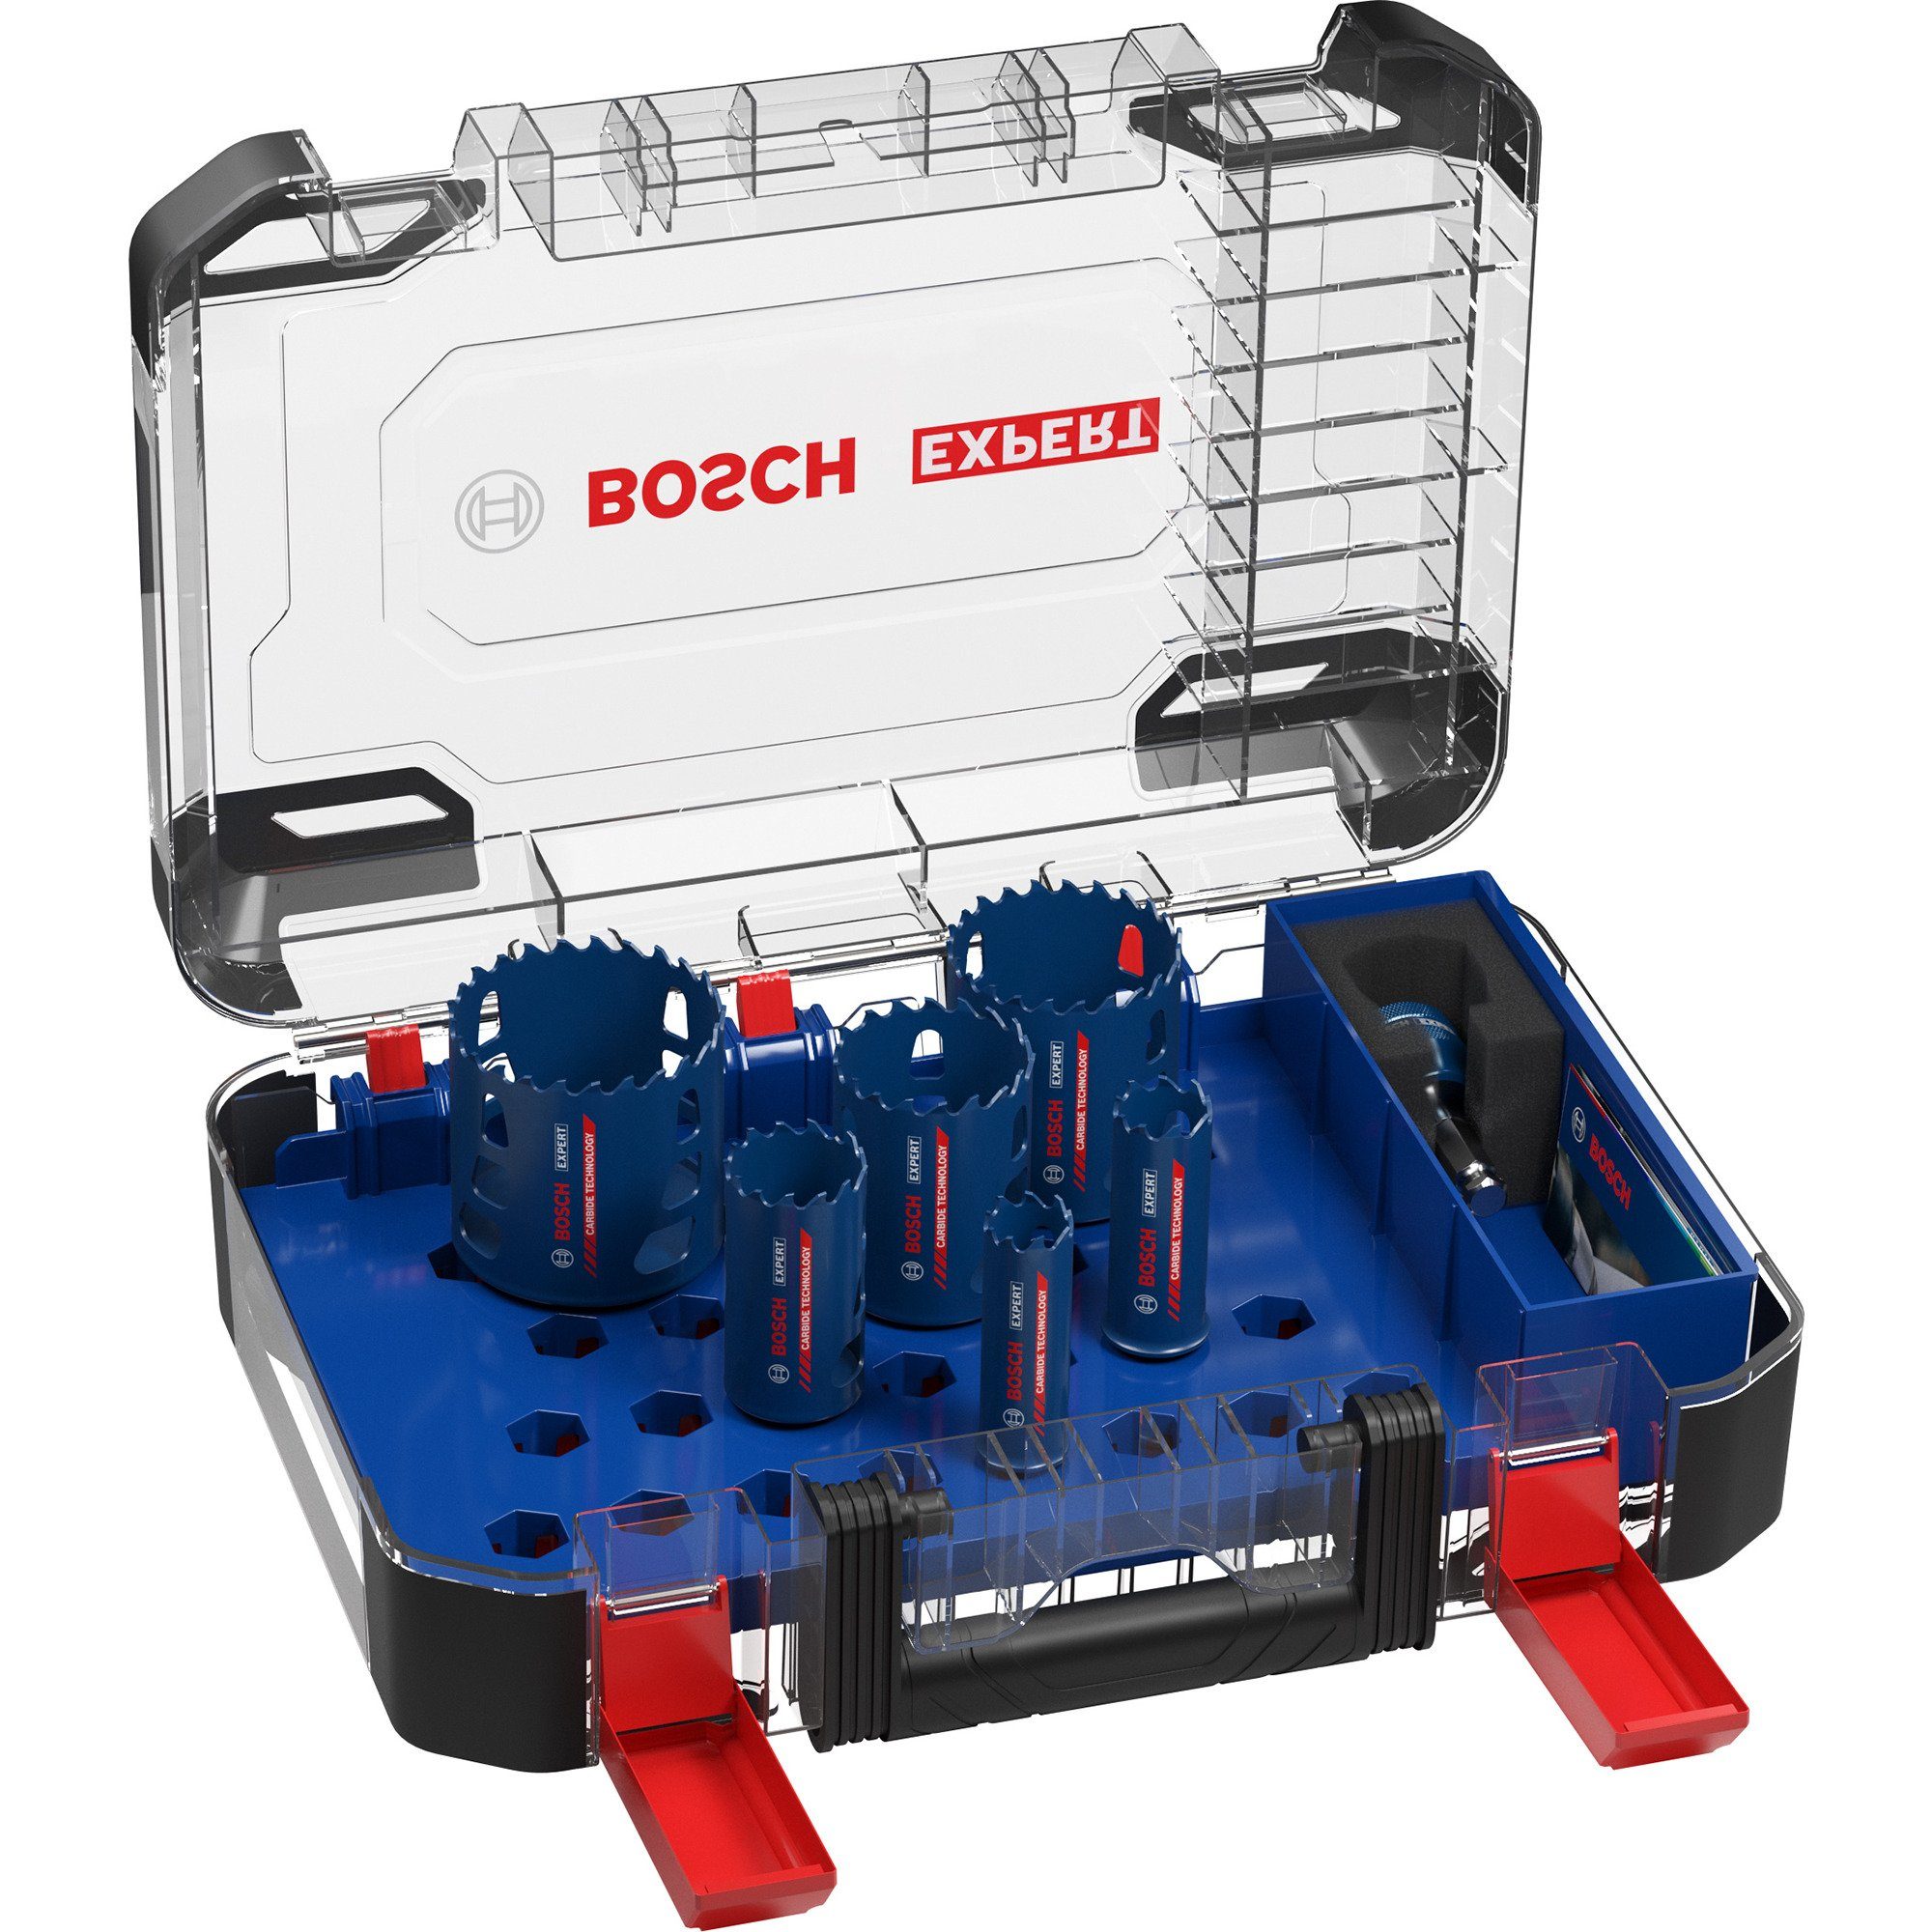 Bosch Professional Lochsäge EXPERT Tough Material, 9-tlg., Standard-Bohrfutter Power-Change-Adapter, Aufnahmesystem: mm, 22/25/35/51/60/68 Set, Bosch